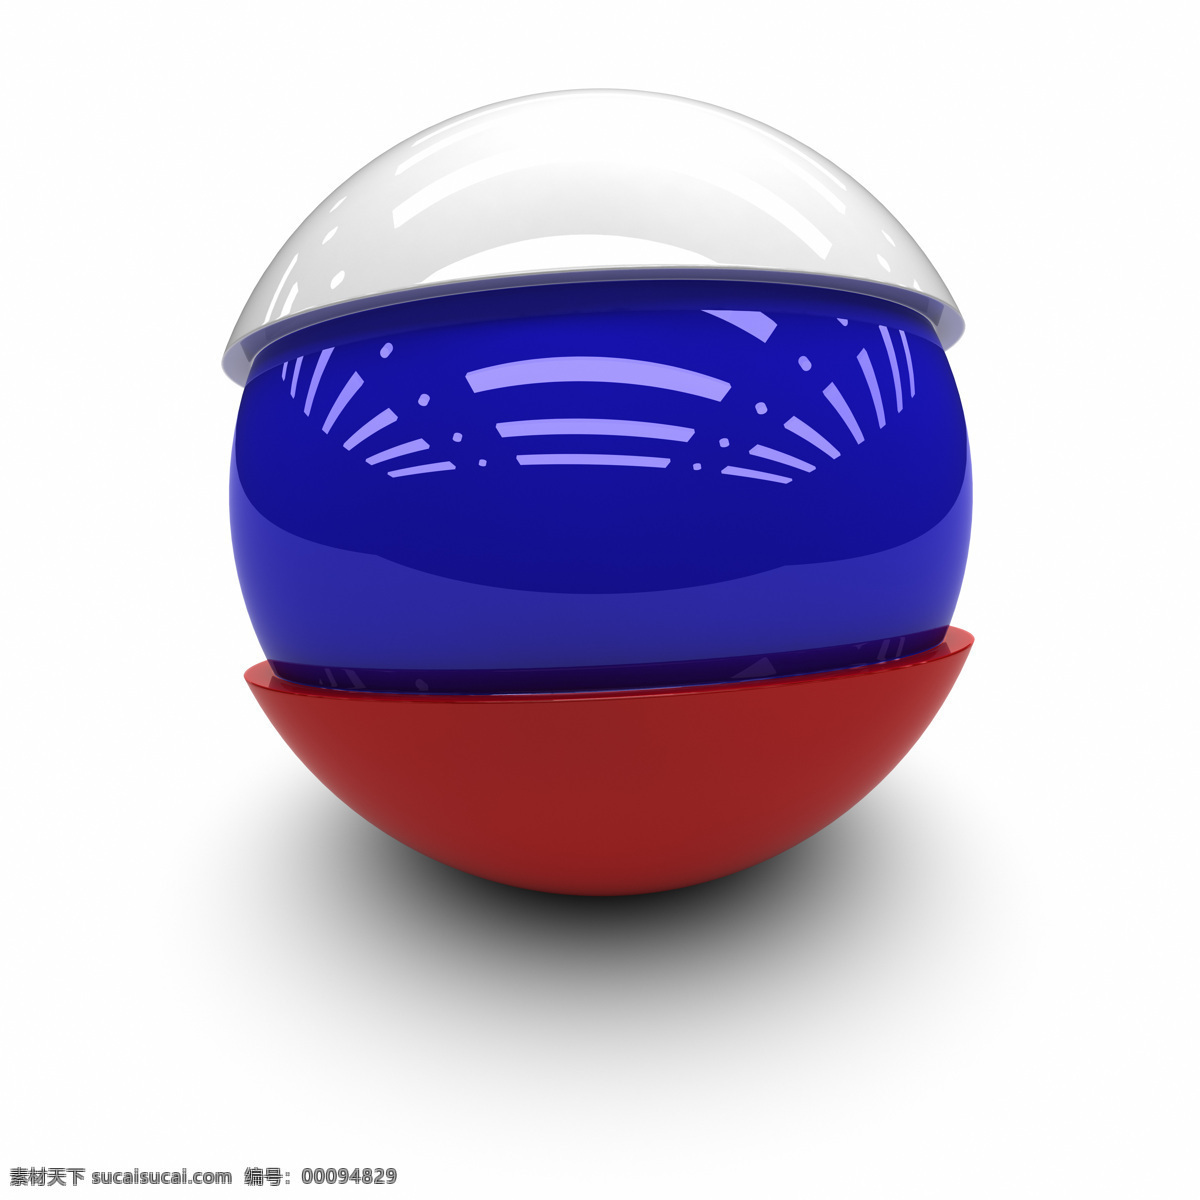 俄罗斯国旗 3d球体国旗 质感 国旗 各国国旗 旗帜 国旗图标 3d设计